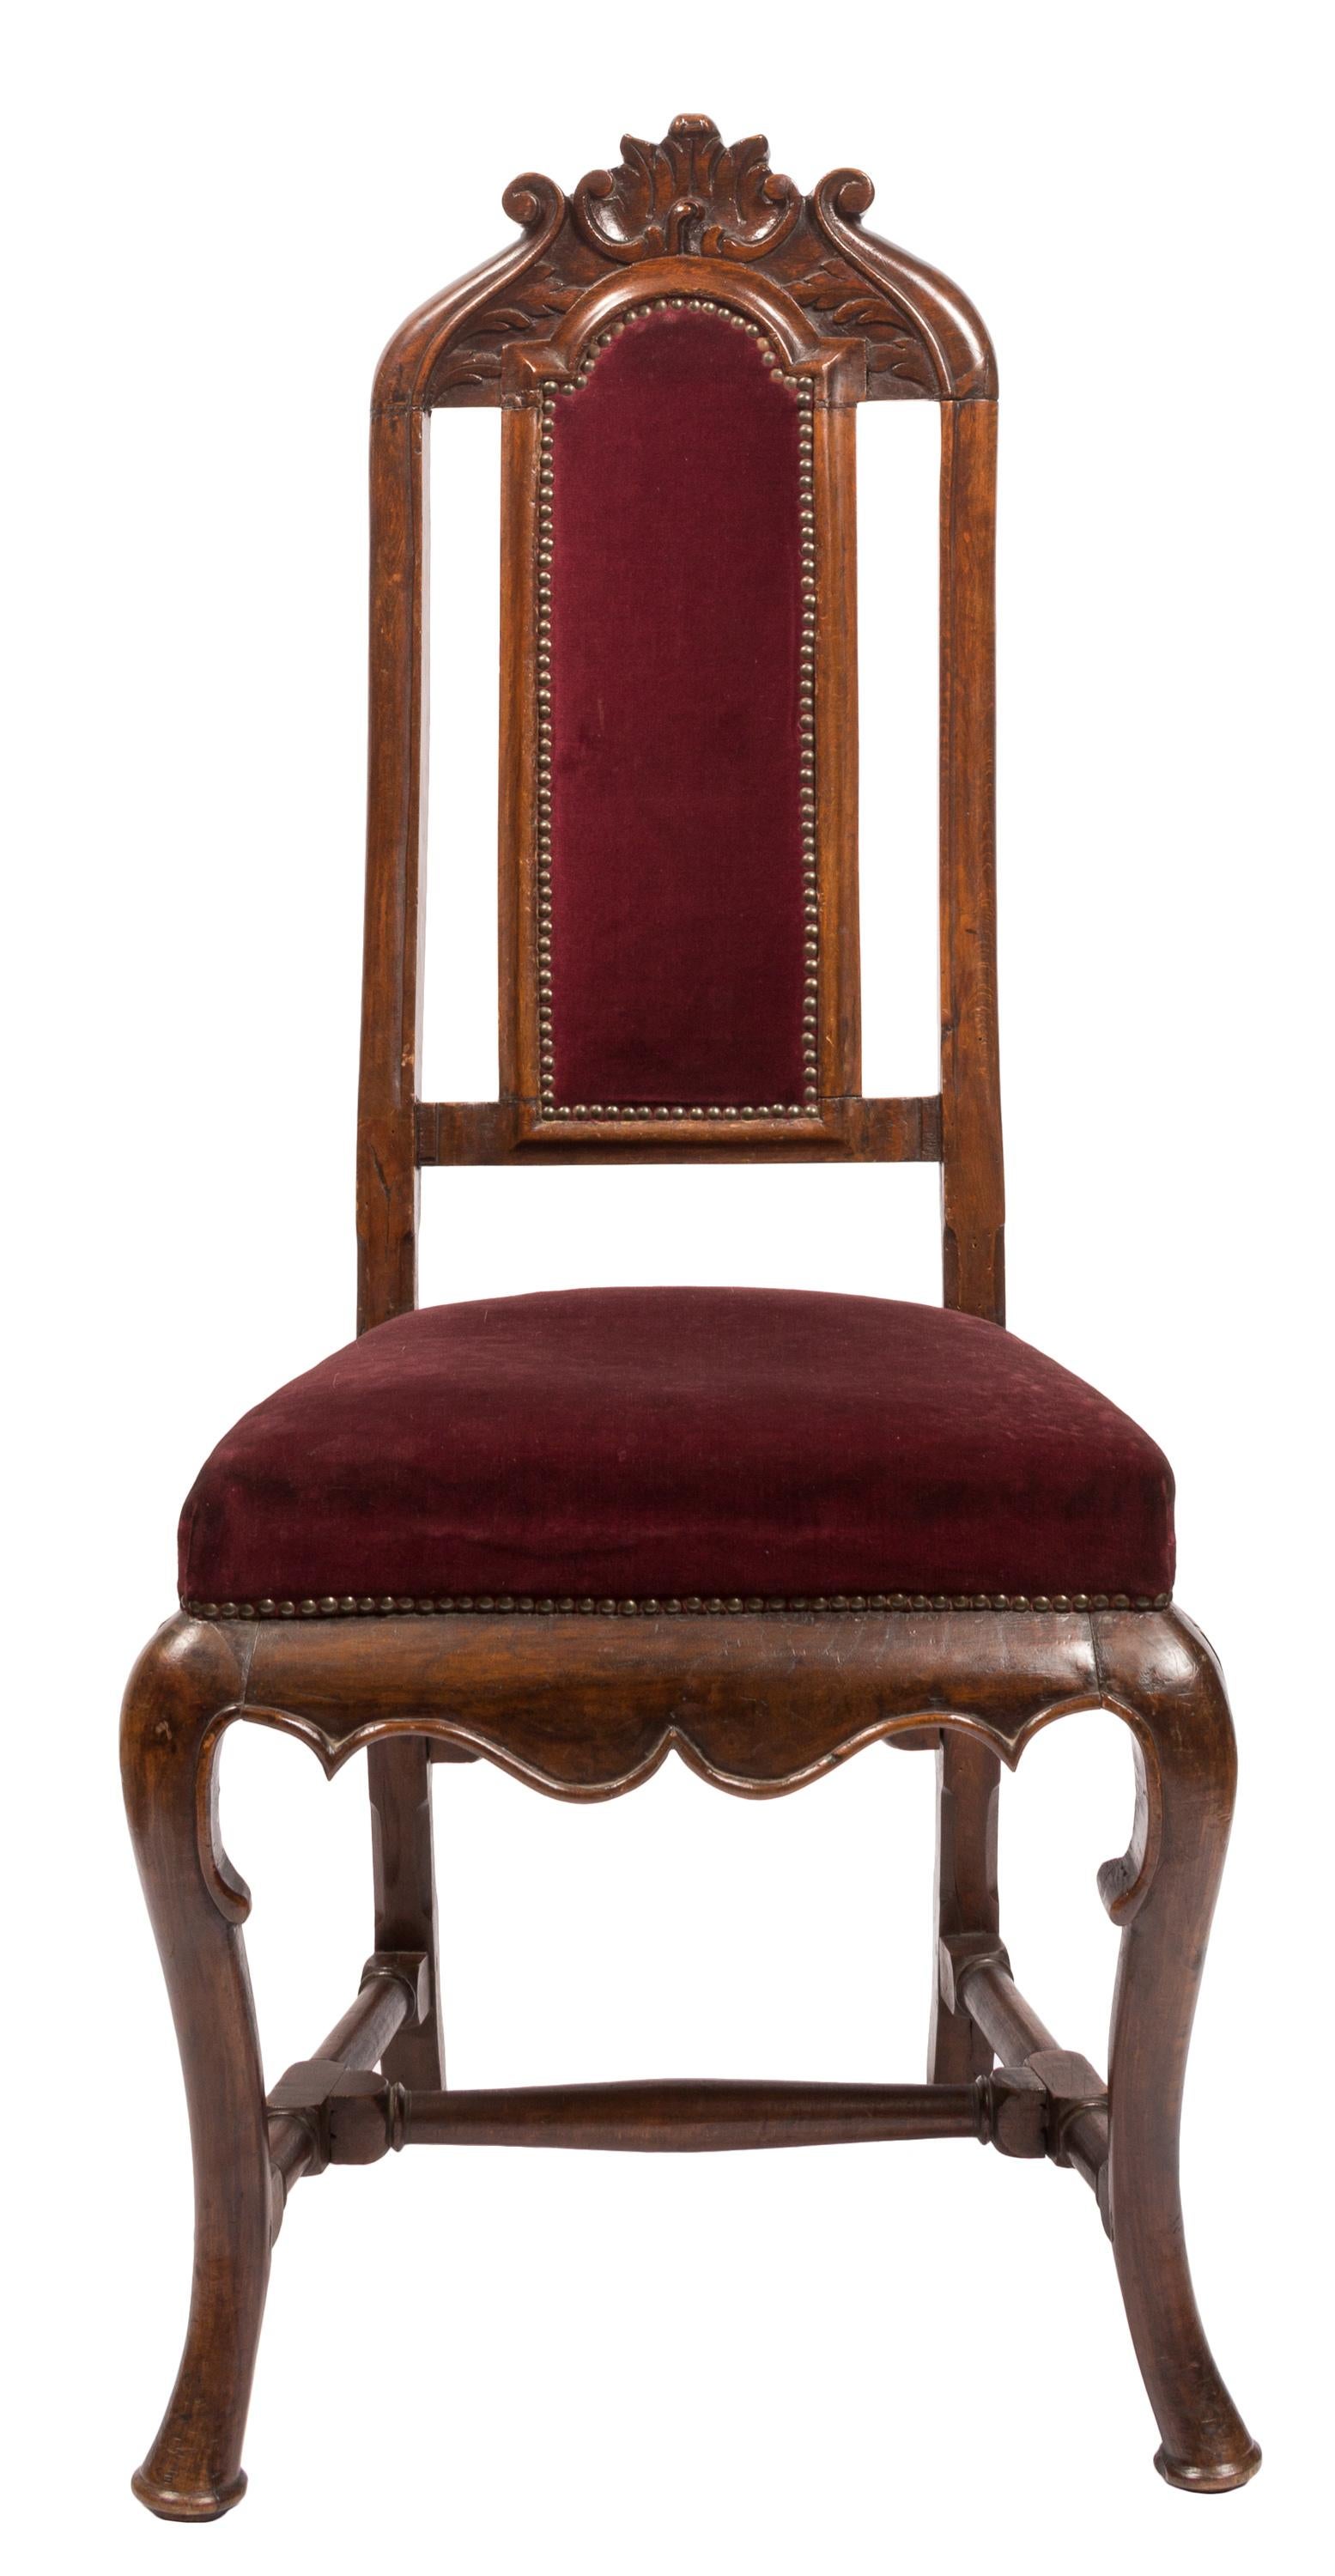 Paire assortie de chaises latérales du XVIIIe siècle de style William & Mary transition vers Queen Anne avec détails sculptés à la main. Tapissé d'un tissu en velours rouge bordeaux avec des bords en laiton. Fabriquées en Espagne en noyer indigène,